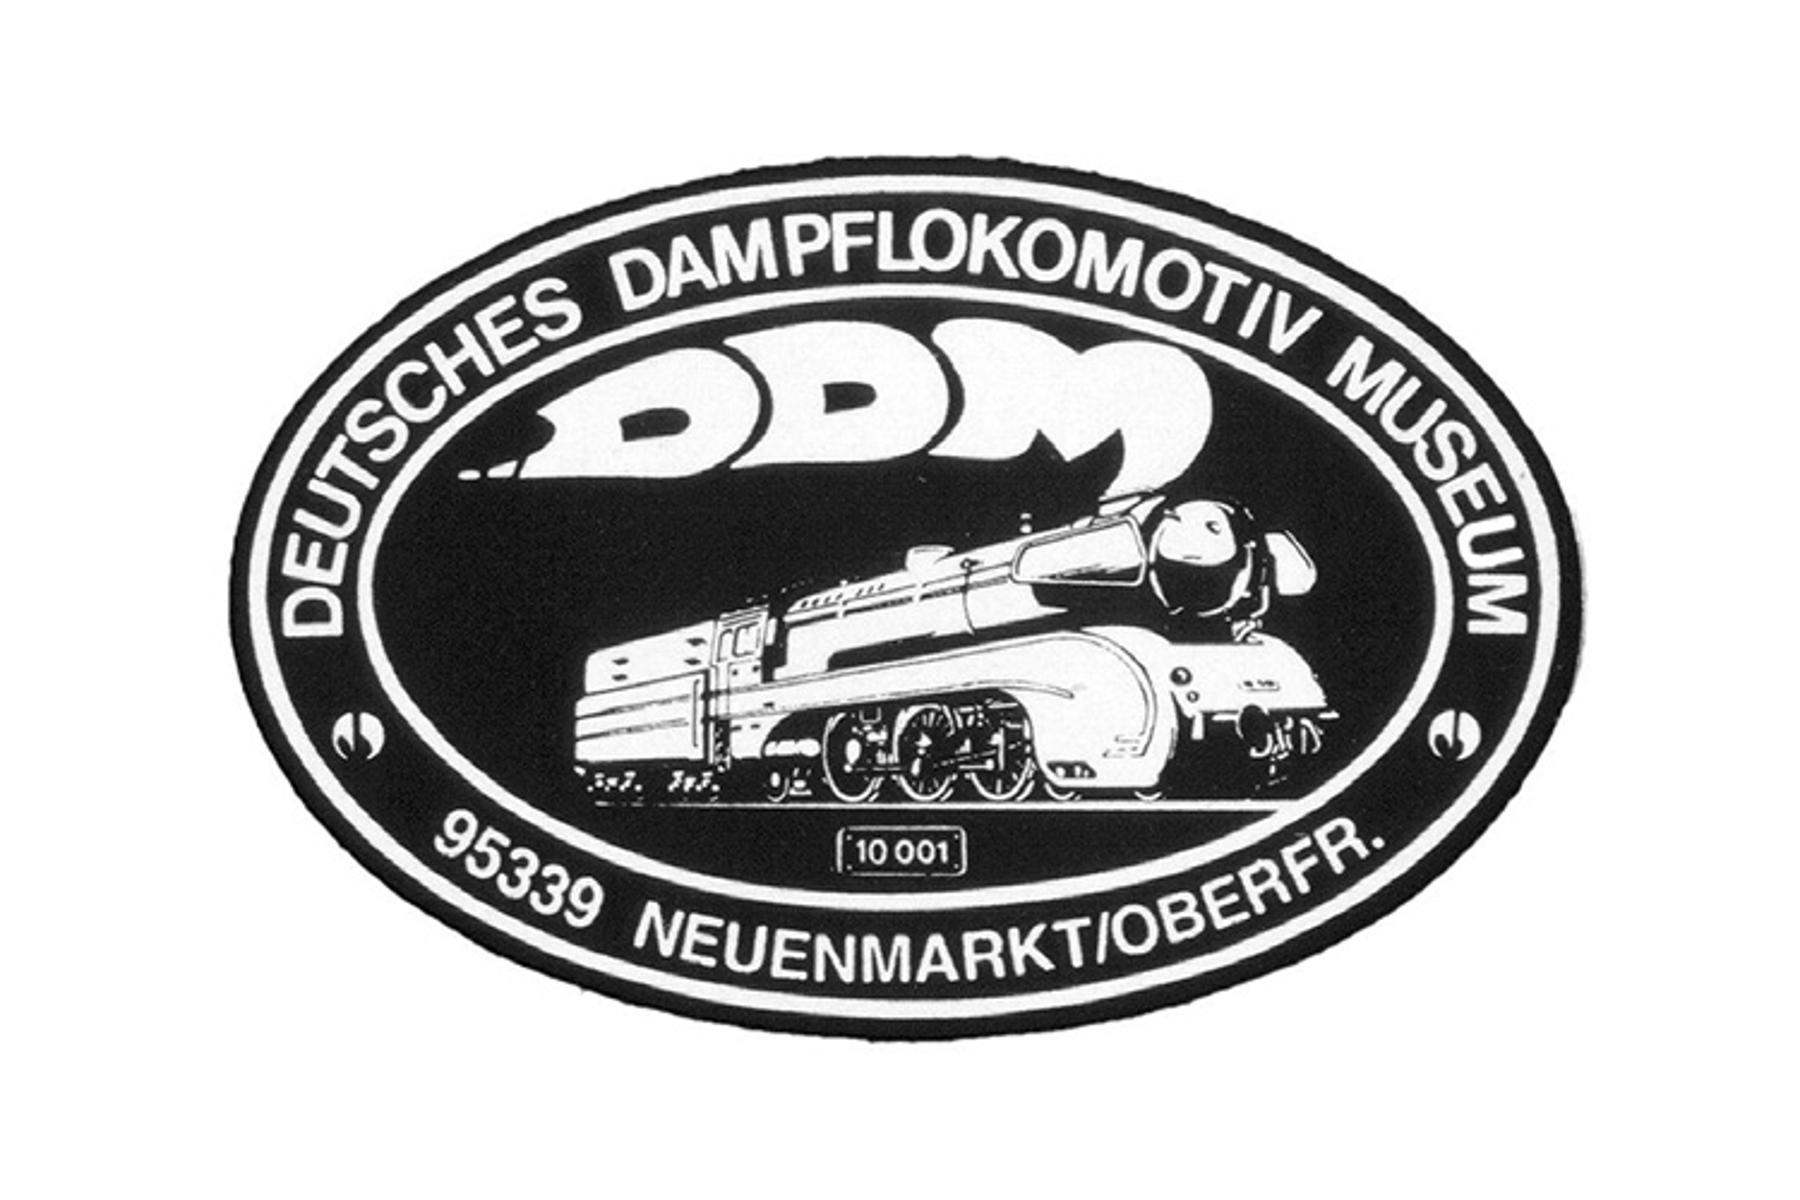 Werbung für das Deutsche Dampflokomotiv-Museum in Neuenmarkt